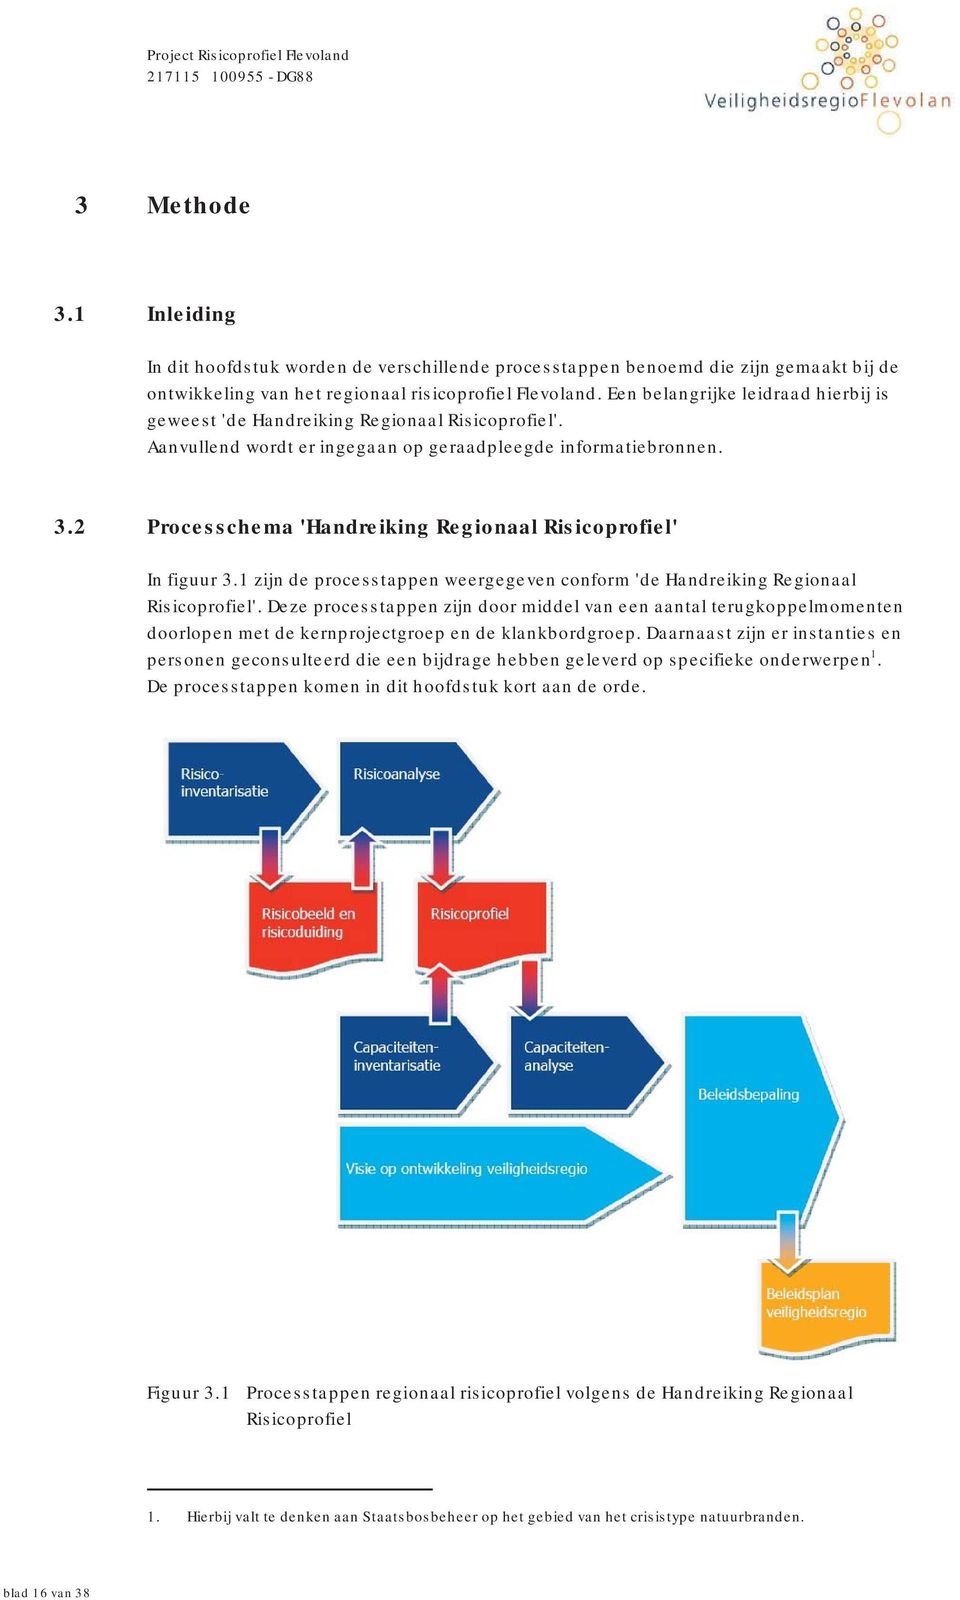 2 Processchema 'Handreiking Regionaal Risicoprofiel' In figuur 3.1 zijn de processtappen weergegeven conform 'de Handreiking Regionaal Risicoprofiel'.